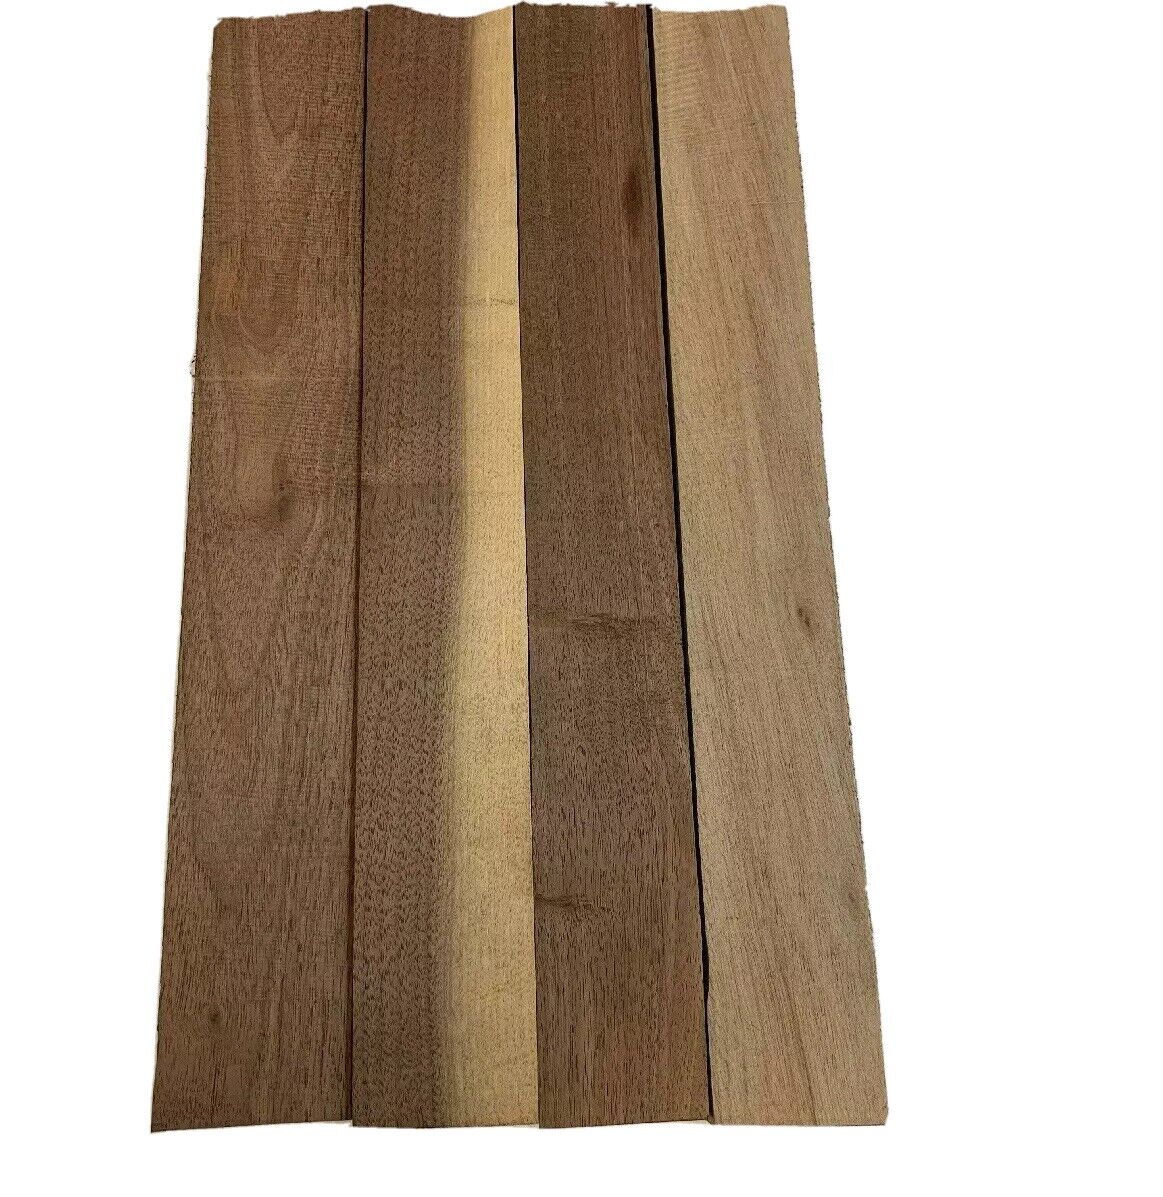 4 Pack Set,  Black Walnut Lumber Board, Turning Wood  - 2" x 2" x 12"  FREE SHIP EXOTIC WOOD ZONE Turning Wood Blanks - фотография #2